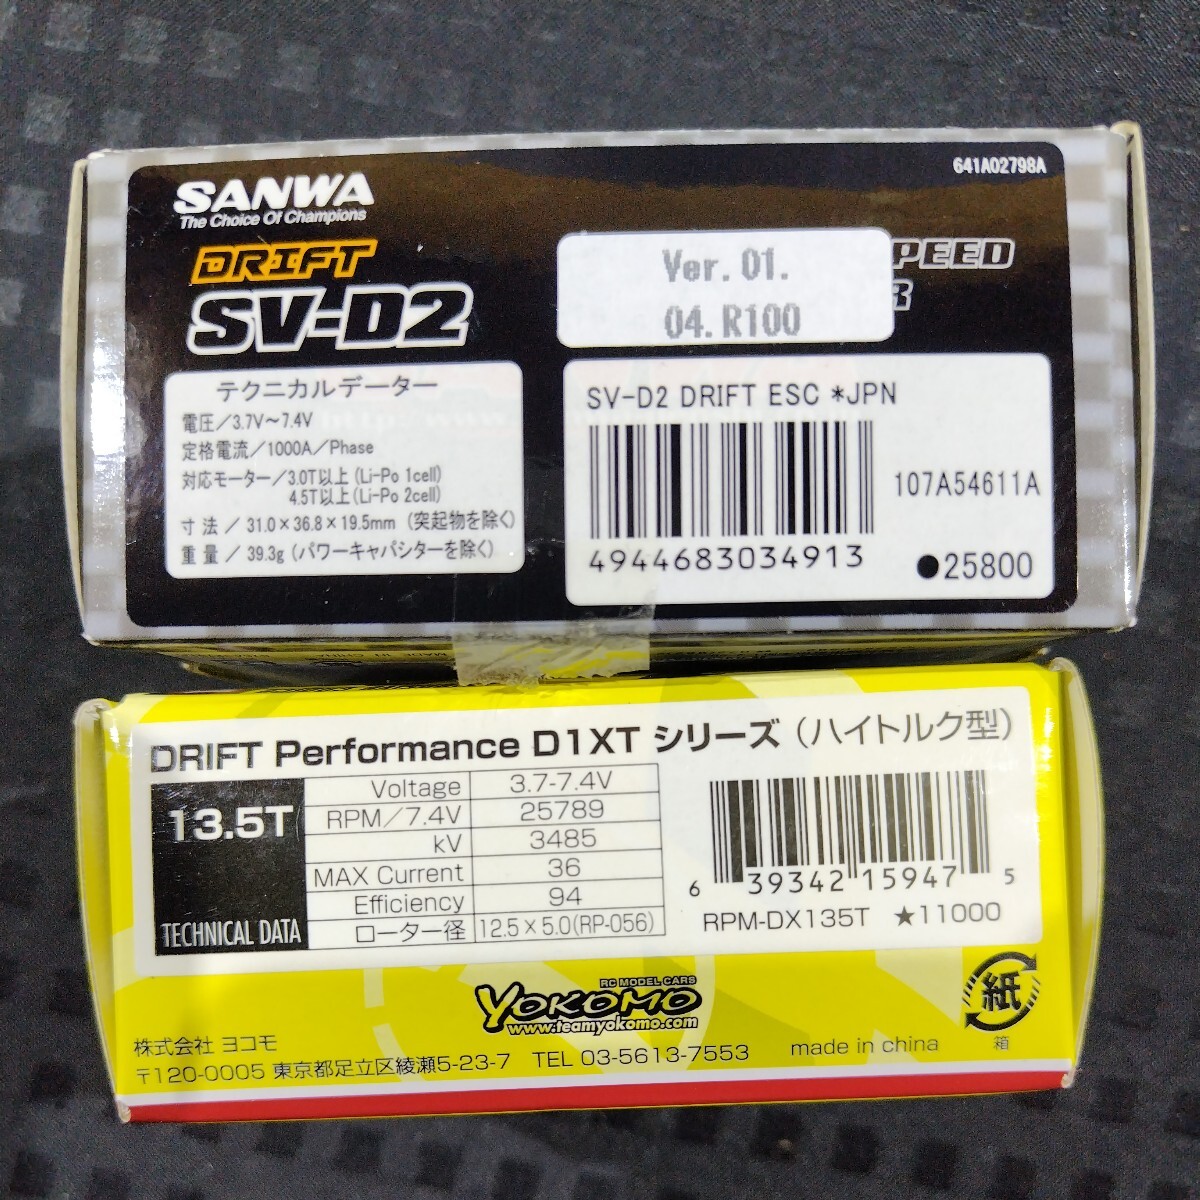 SANWA ドリフト ブラシレスアンプ モーター 13.5T セット SV-D2 DX1 SERIES-1 type T High Torqe DRIFT Performance SV-D2 SGS-02コンボ_画像8